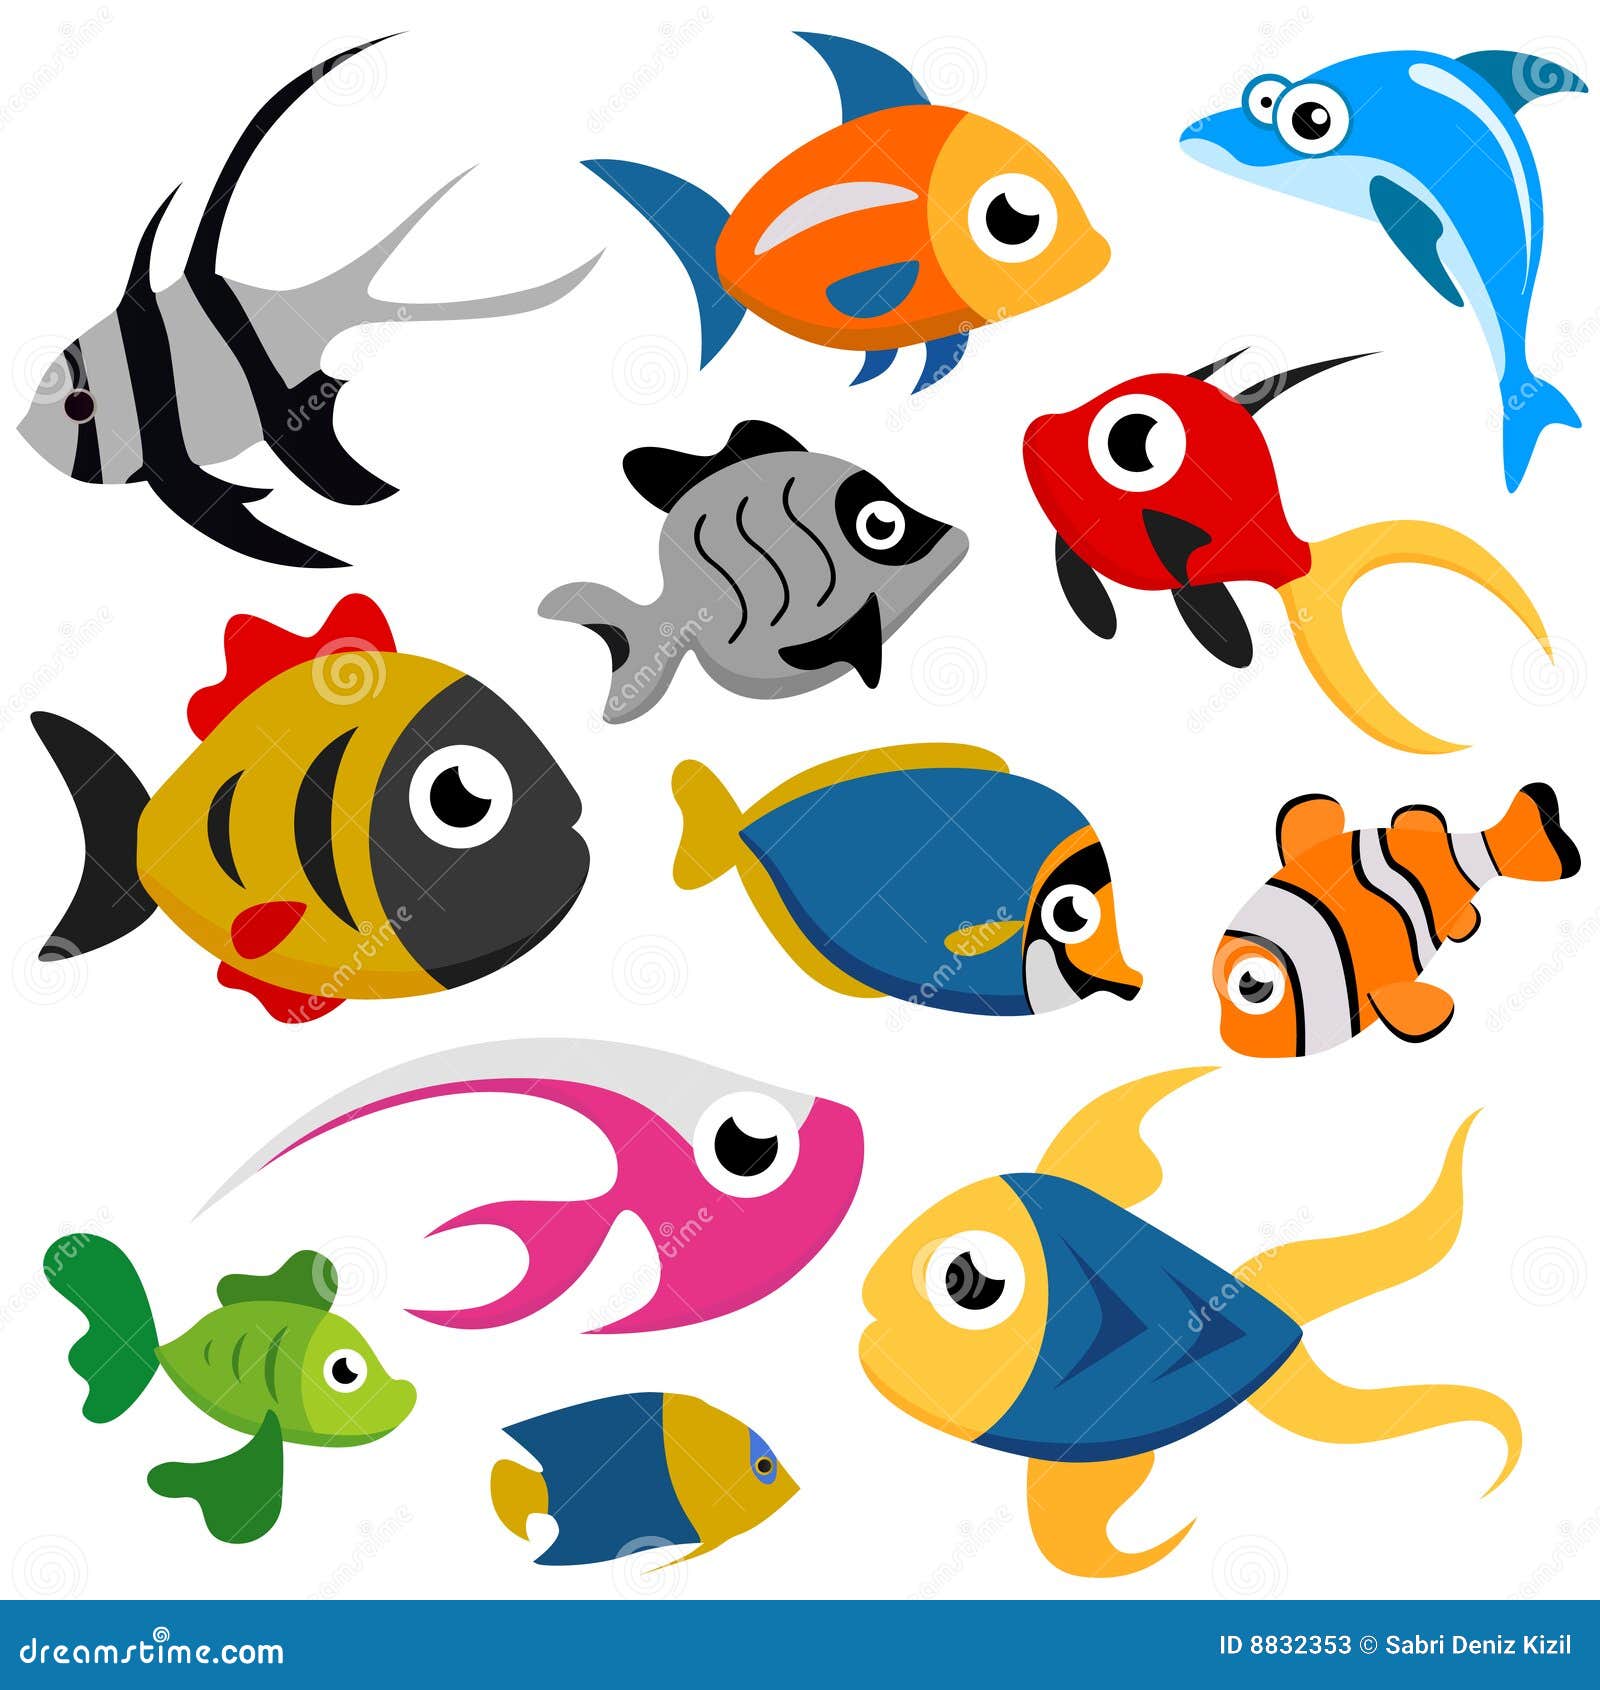 Cartoon fish vector stock vector. Illustration of fantasy - 8832353